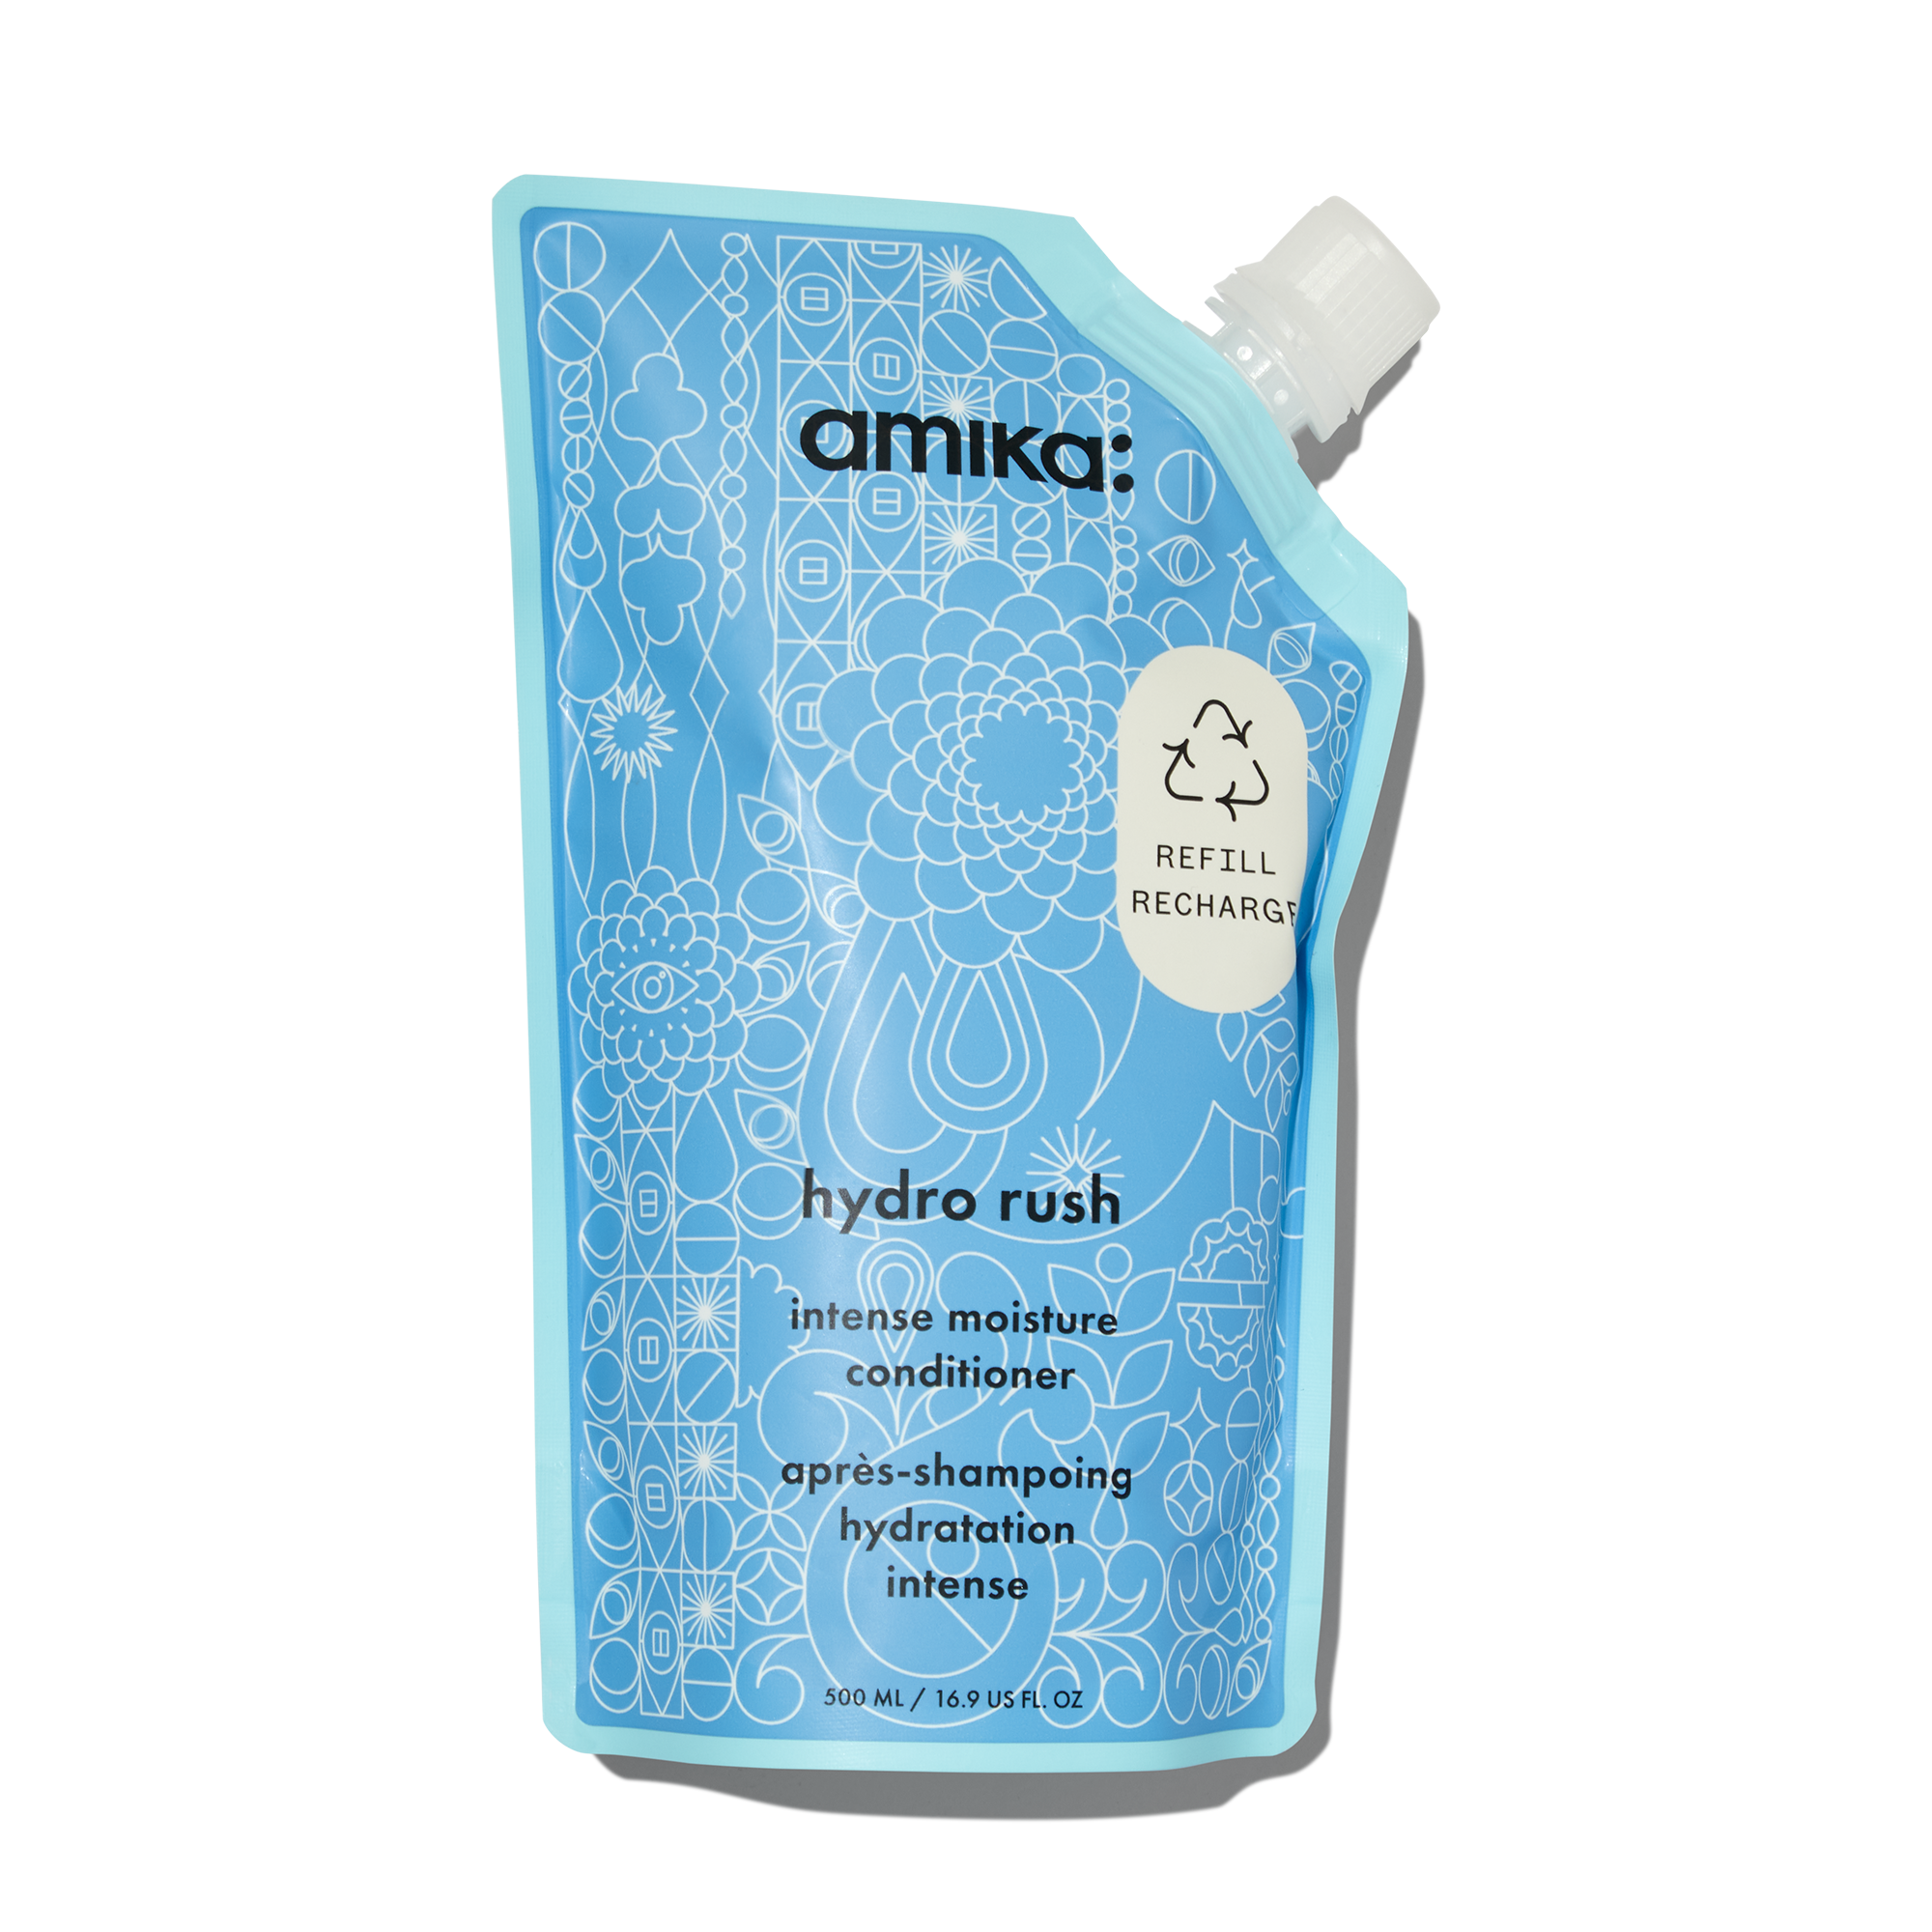 Amika Hydro Rush Intense Moisture Shampoo and Conditioner Refill Duo ($80 Value) / 16OZ